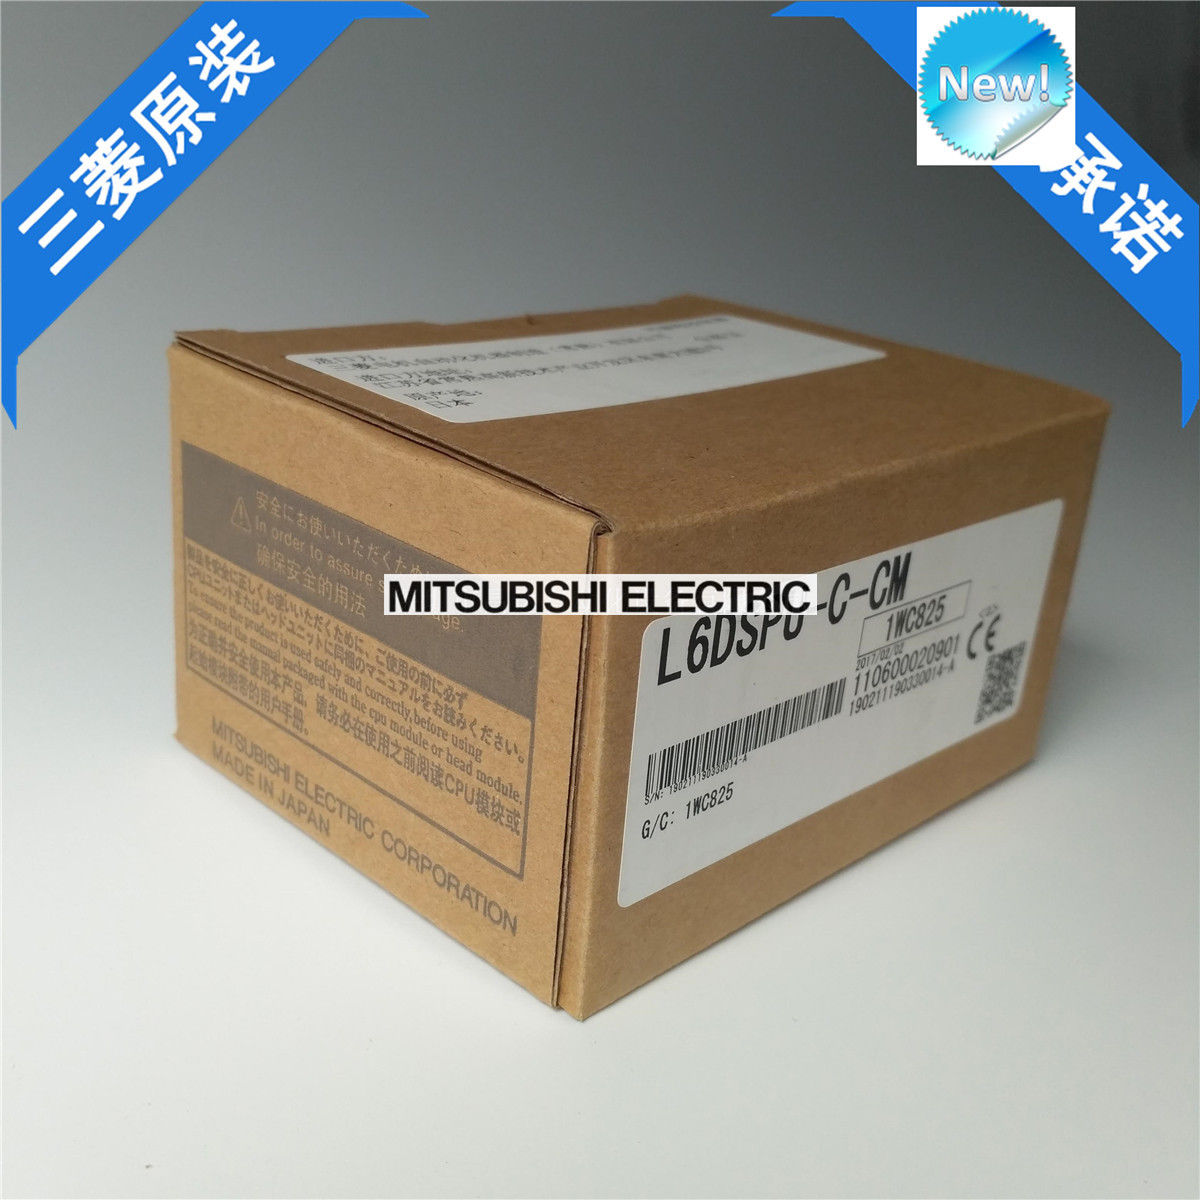 Brand New Mitsubishi PLC L6DSPU-C-CM In Box L6DSPUCCM - Click Image to Close